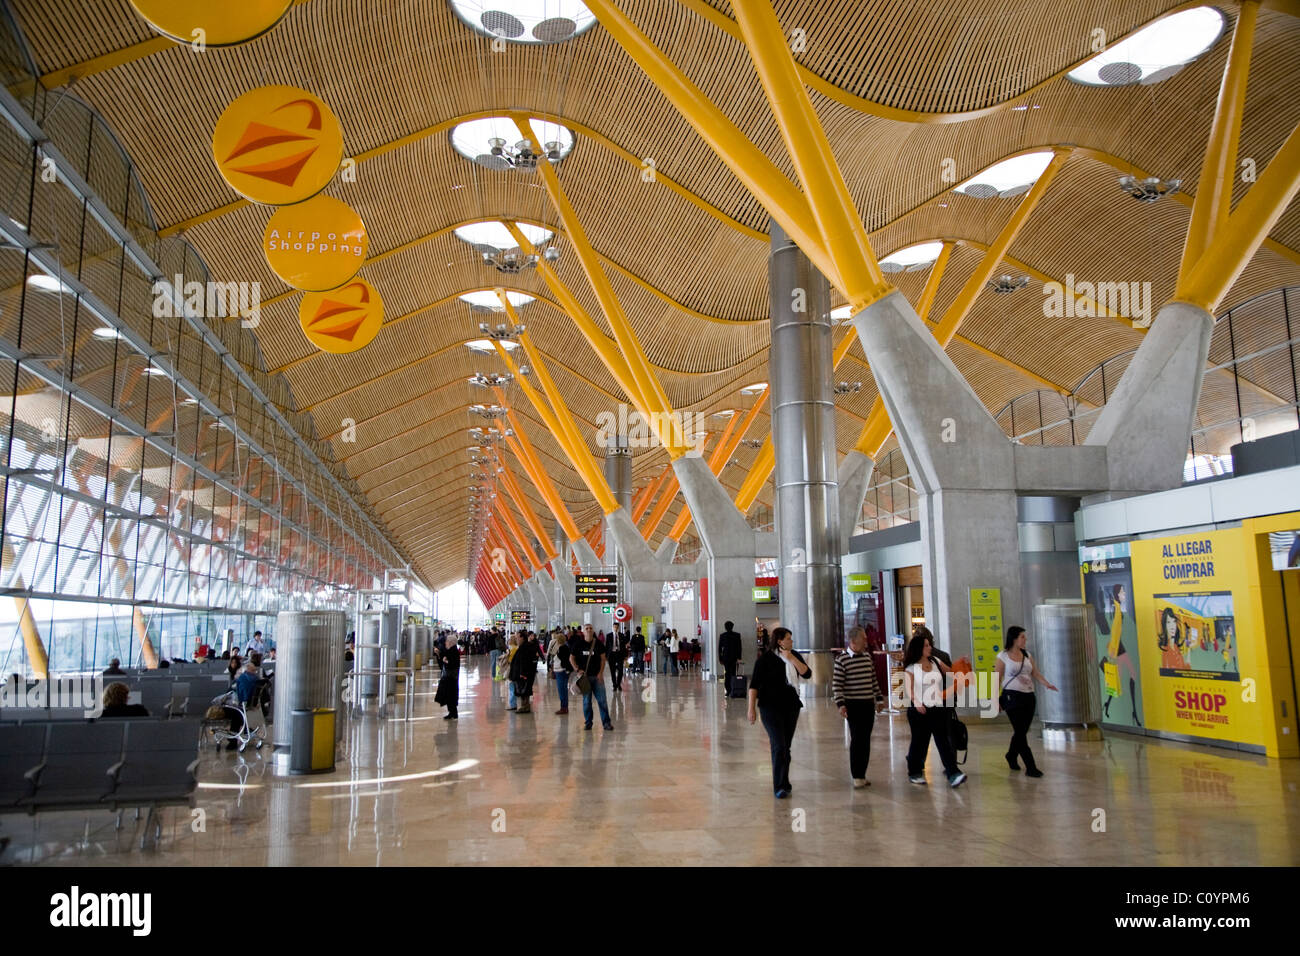 Aéroport de départ / salle des départs et toit moderne à l'aéroport de Madrid Barajas aéroport de Madrid-Barajas /. L'Espagne. Banque D'Images